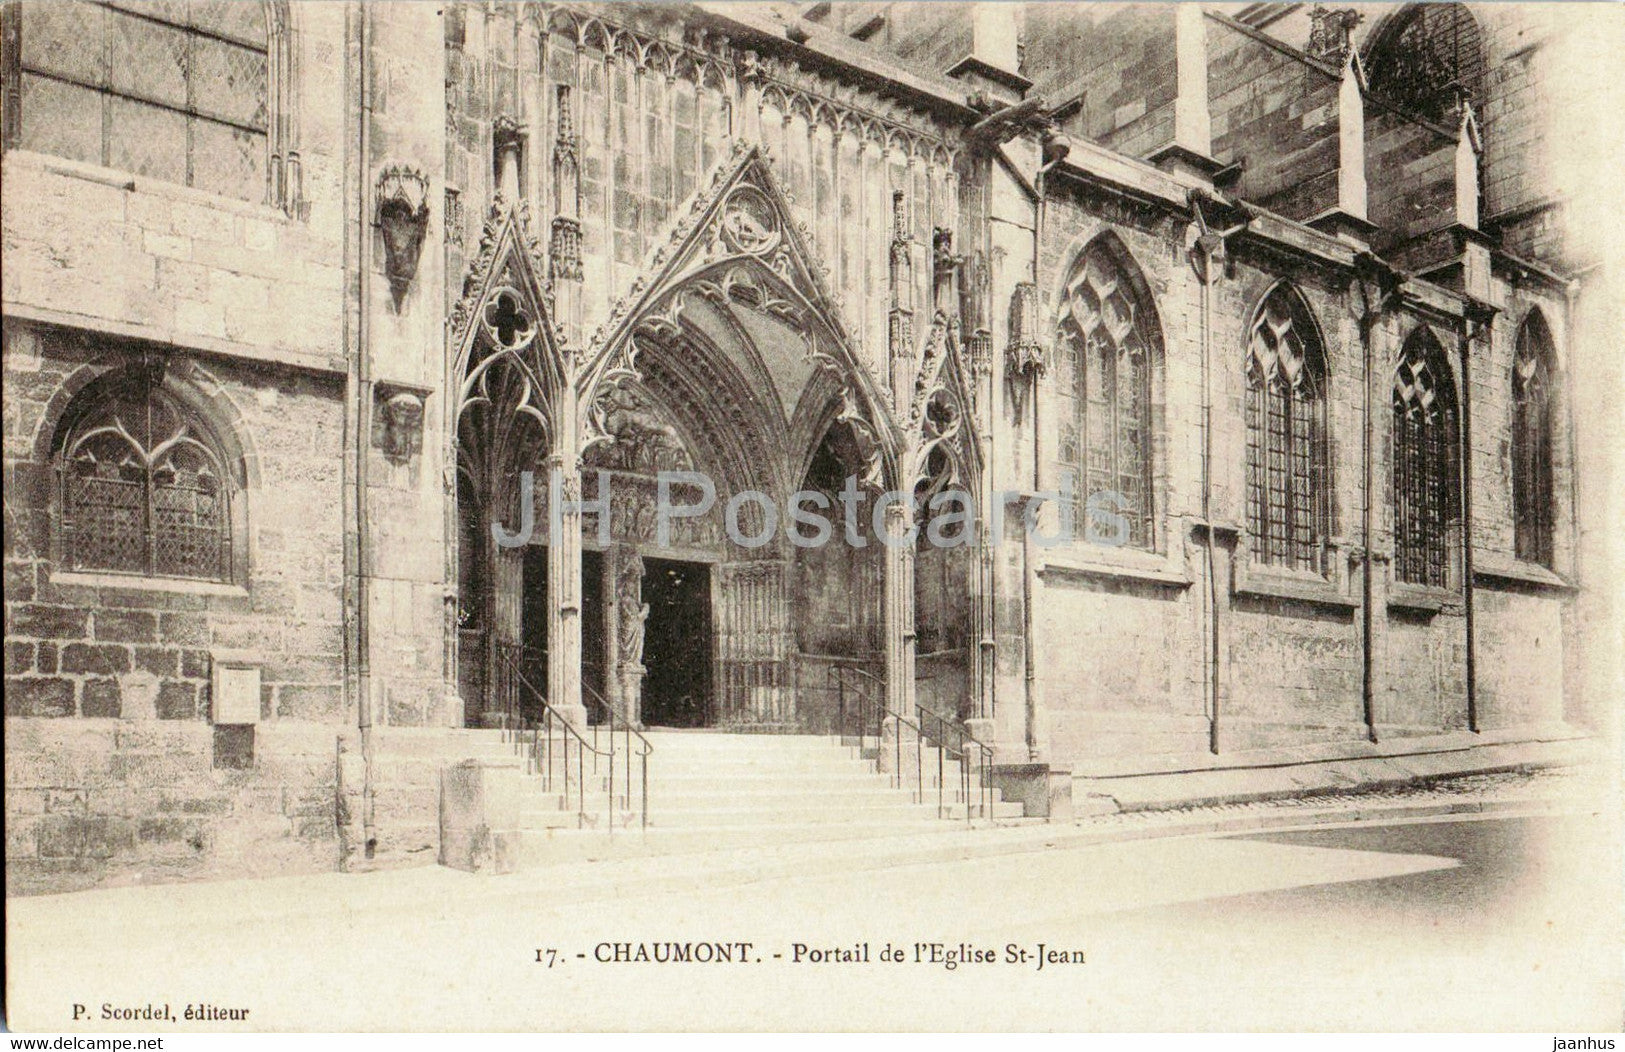 Chaumont - Portail de l'Eglise St Jean - church - 17 - old postcard - France - unused - JH Postcards